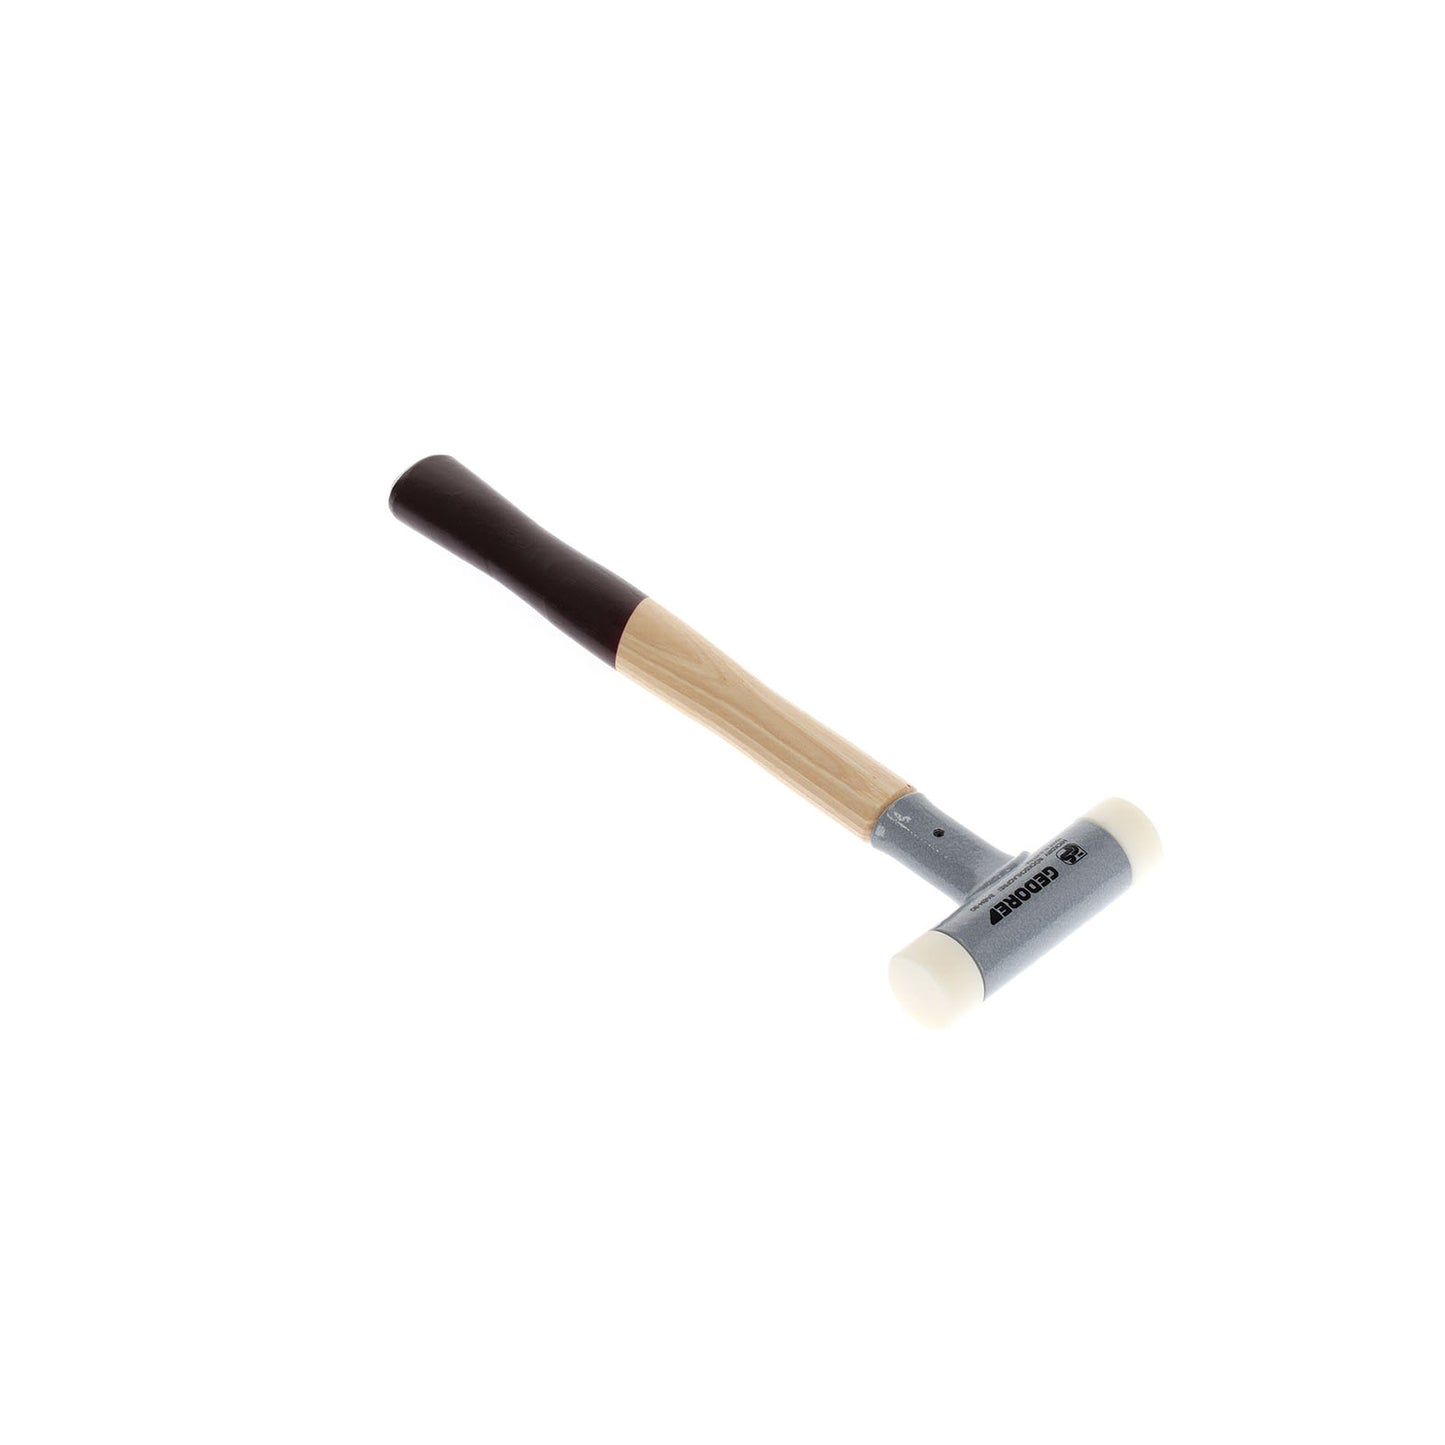 GEDORE 248 H-30 - Anti-rebound hammer d 30 mm (8868230)